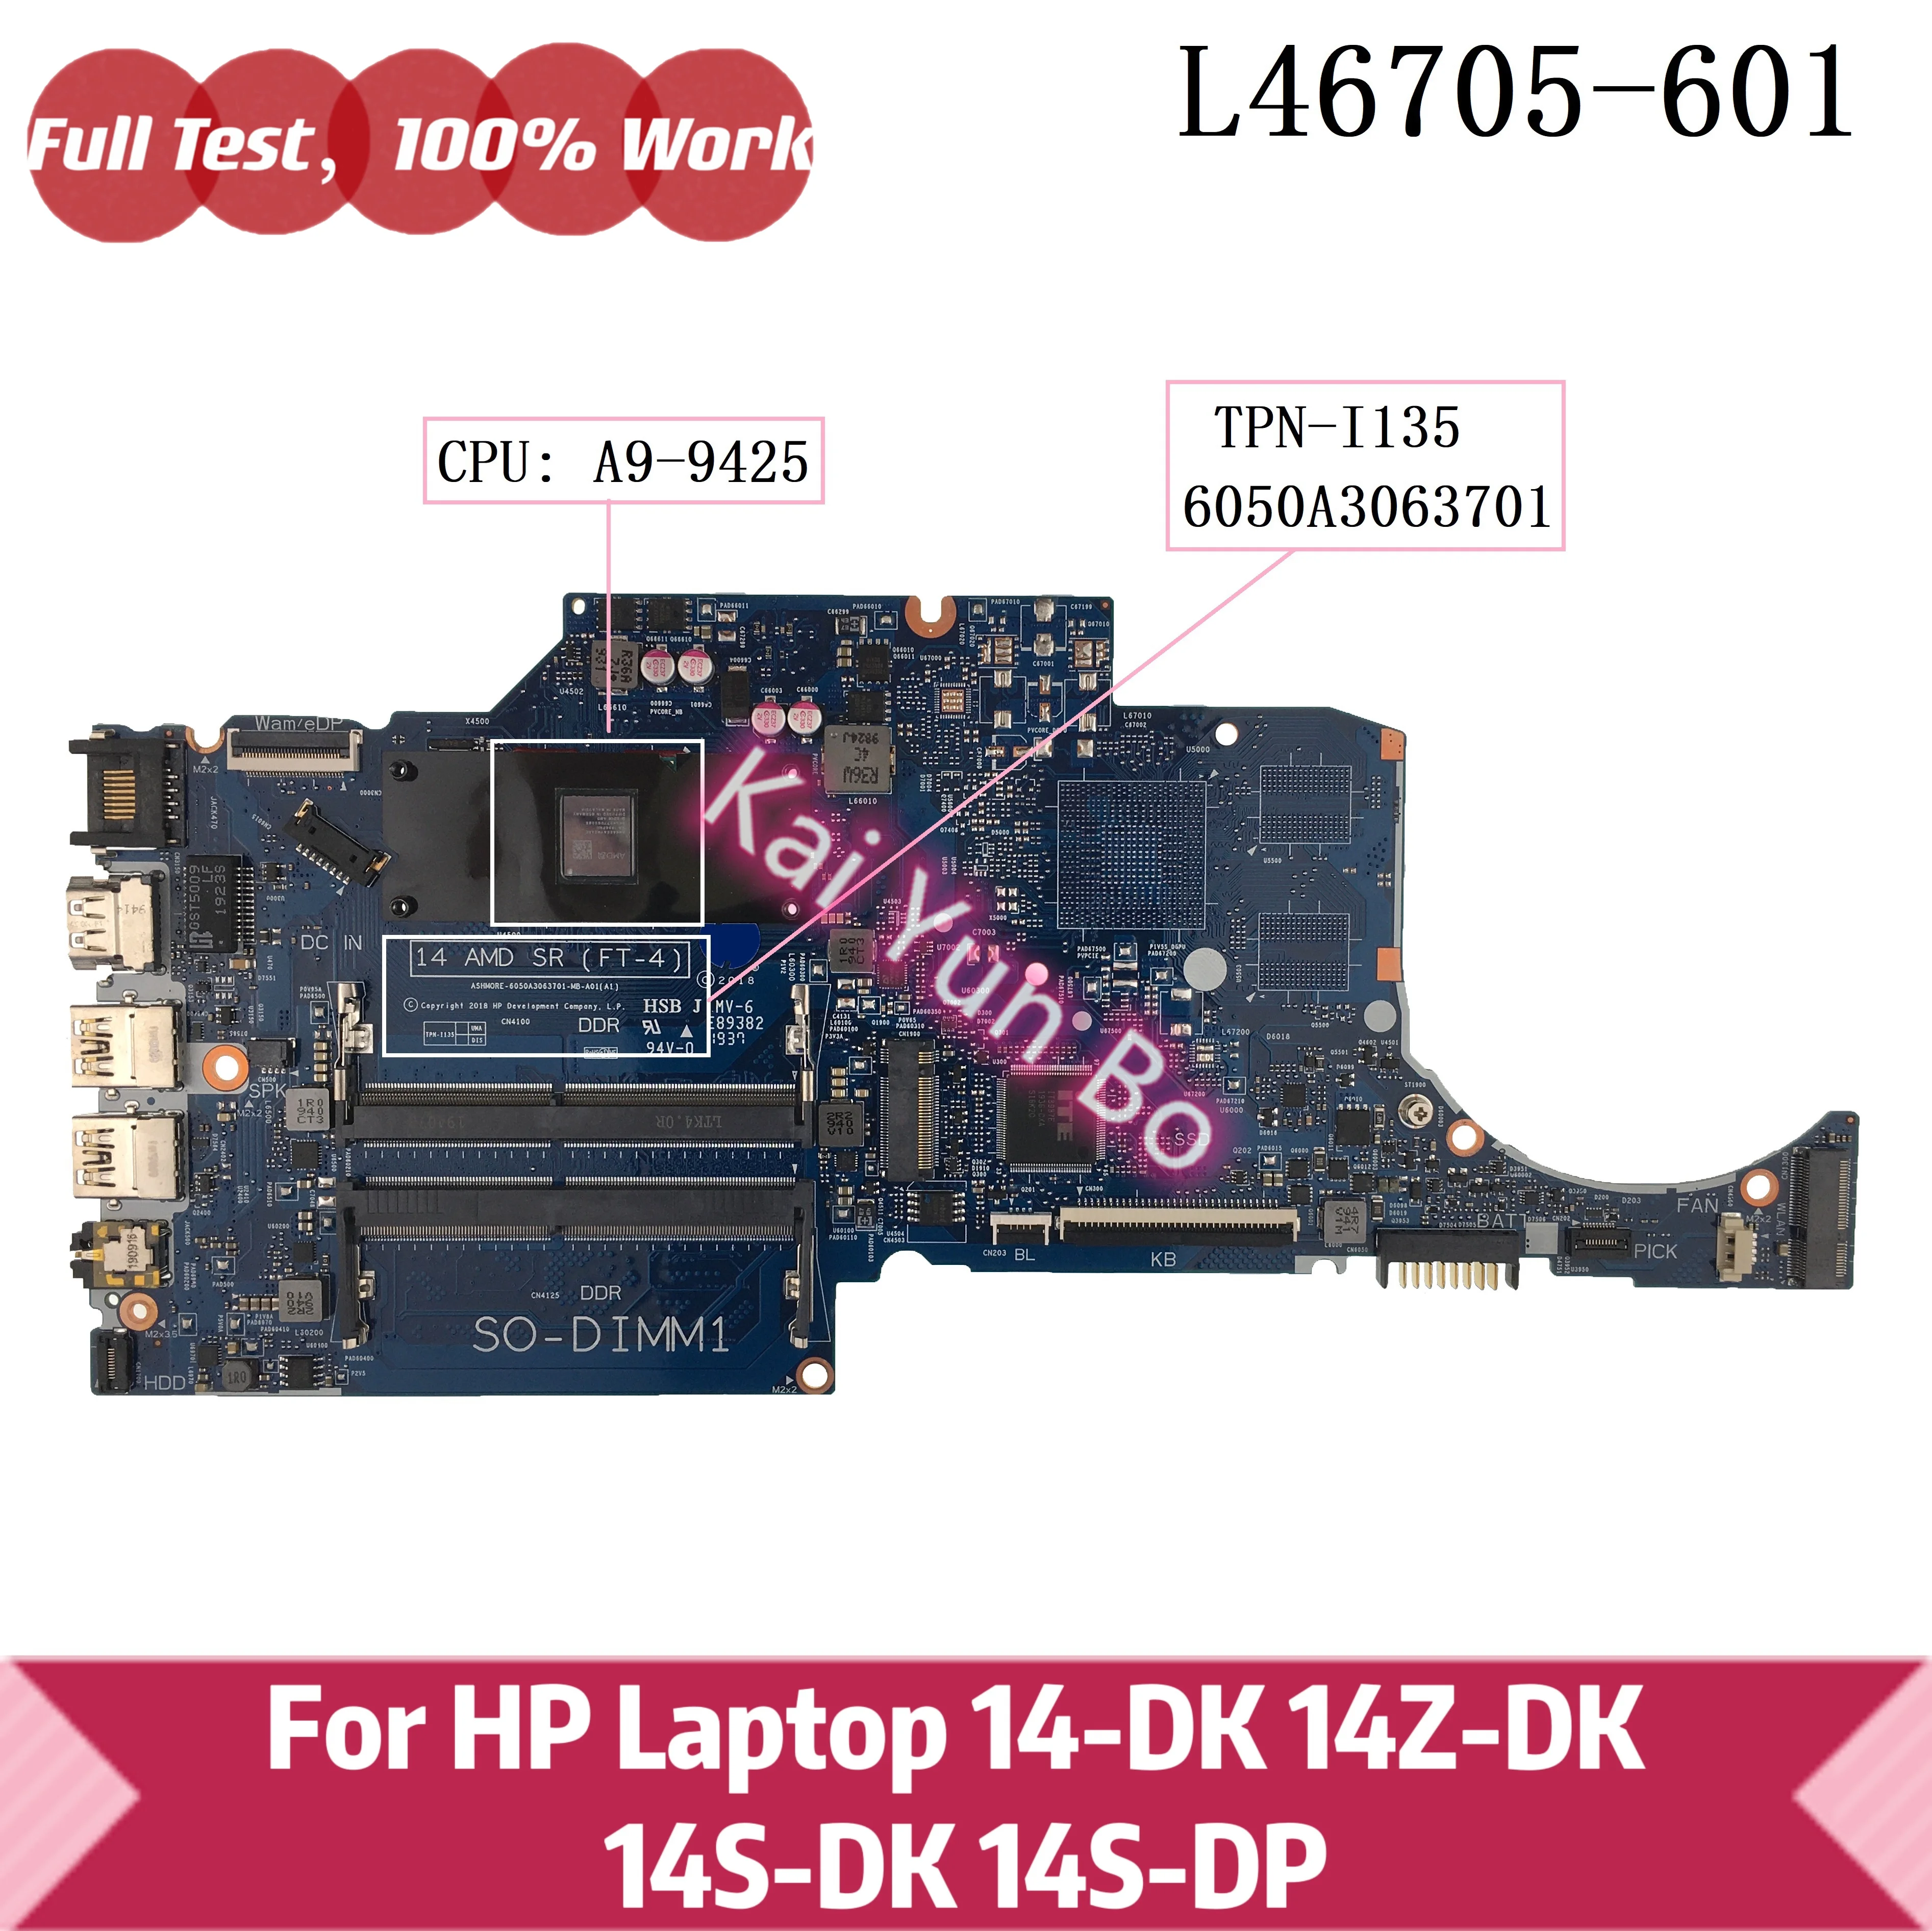 

TPN-I135 6050A3063701 For HP 14-DK 14Z-DK 14S-DK 14S-DP 14-DK0002DX Laptop Motherboard L46705-601 L46705-001 with A9-9425 CPU